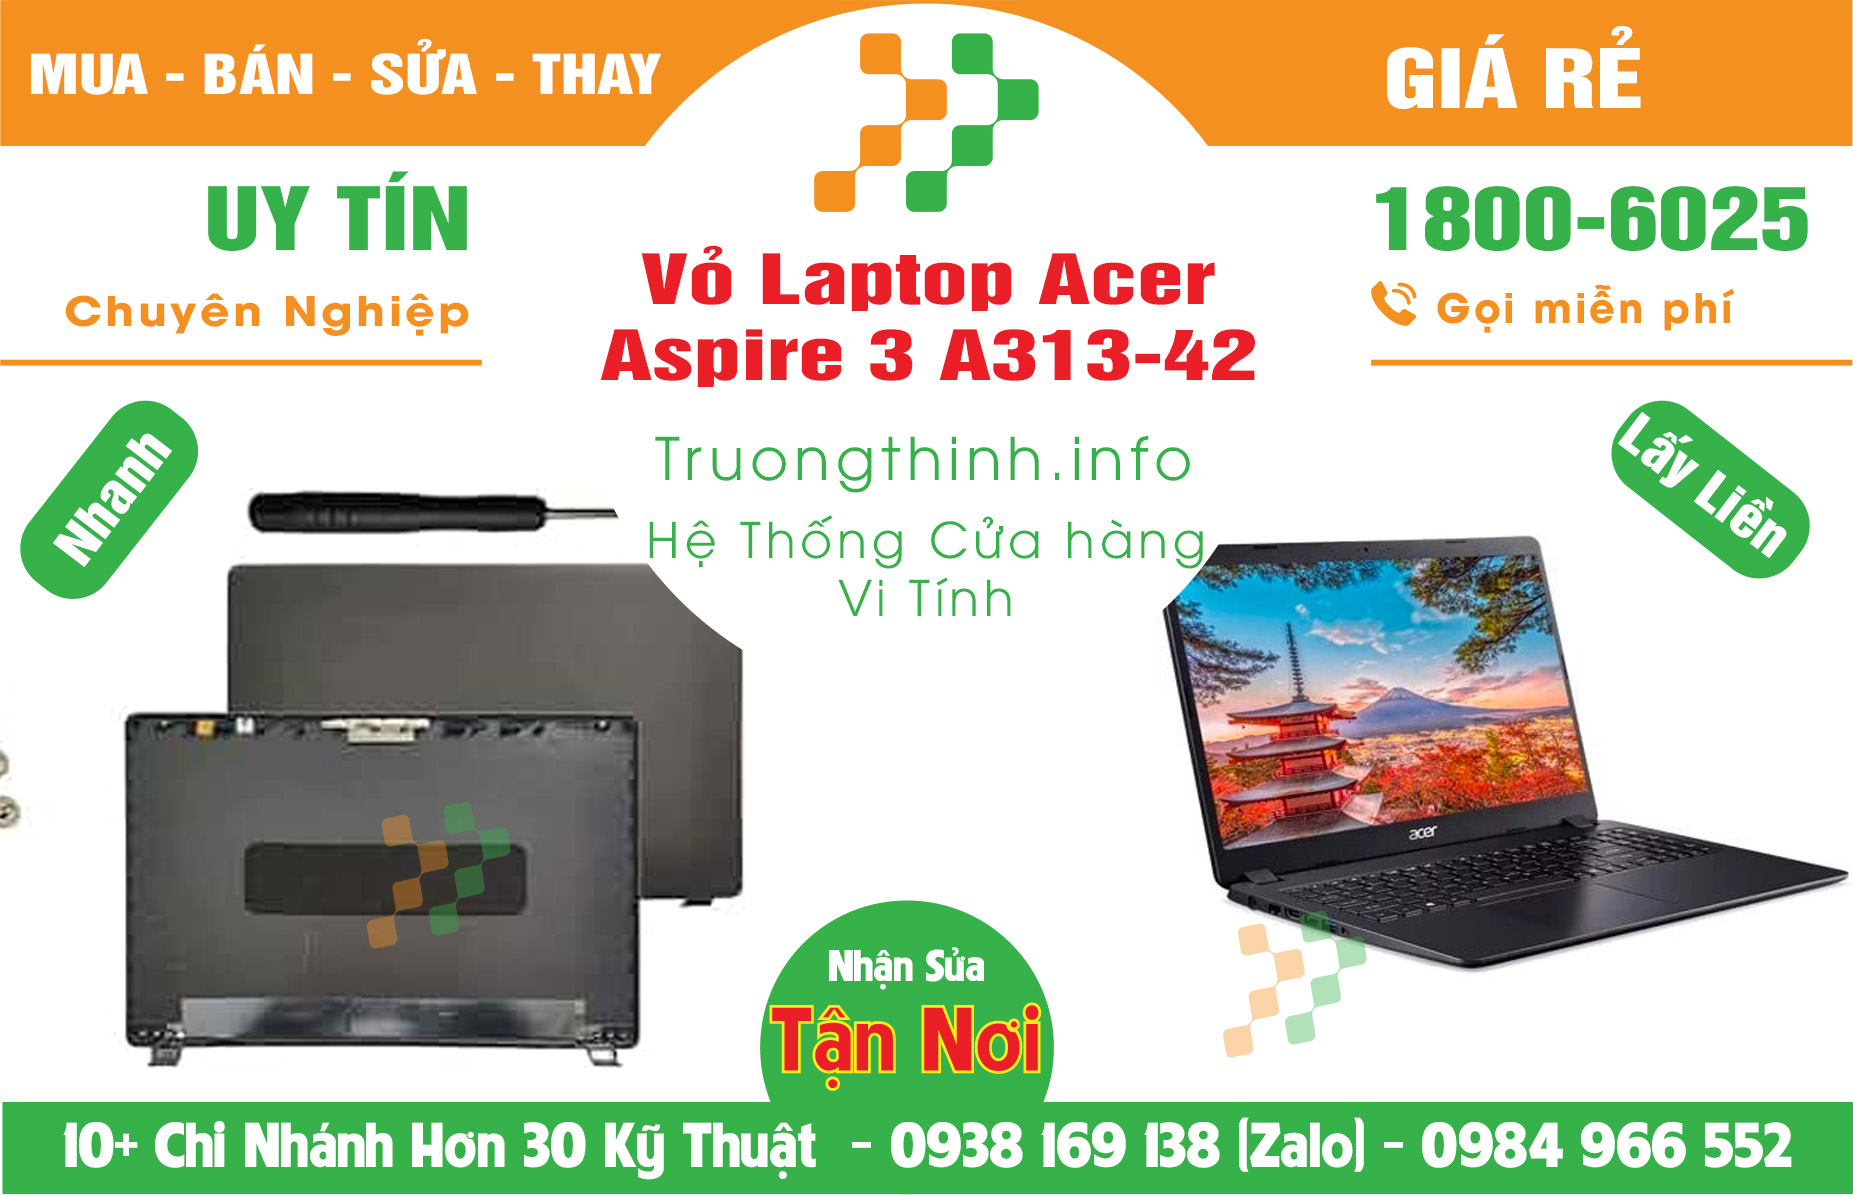 Mua Vỏ Laptop Acer Aspire 3 A313-42 Giá Rẻ | Máy Tính Trường Thịnh Giá Rẻ